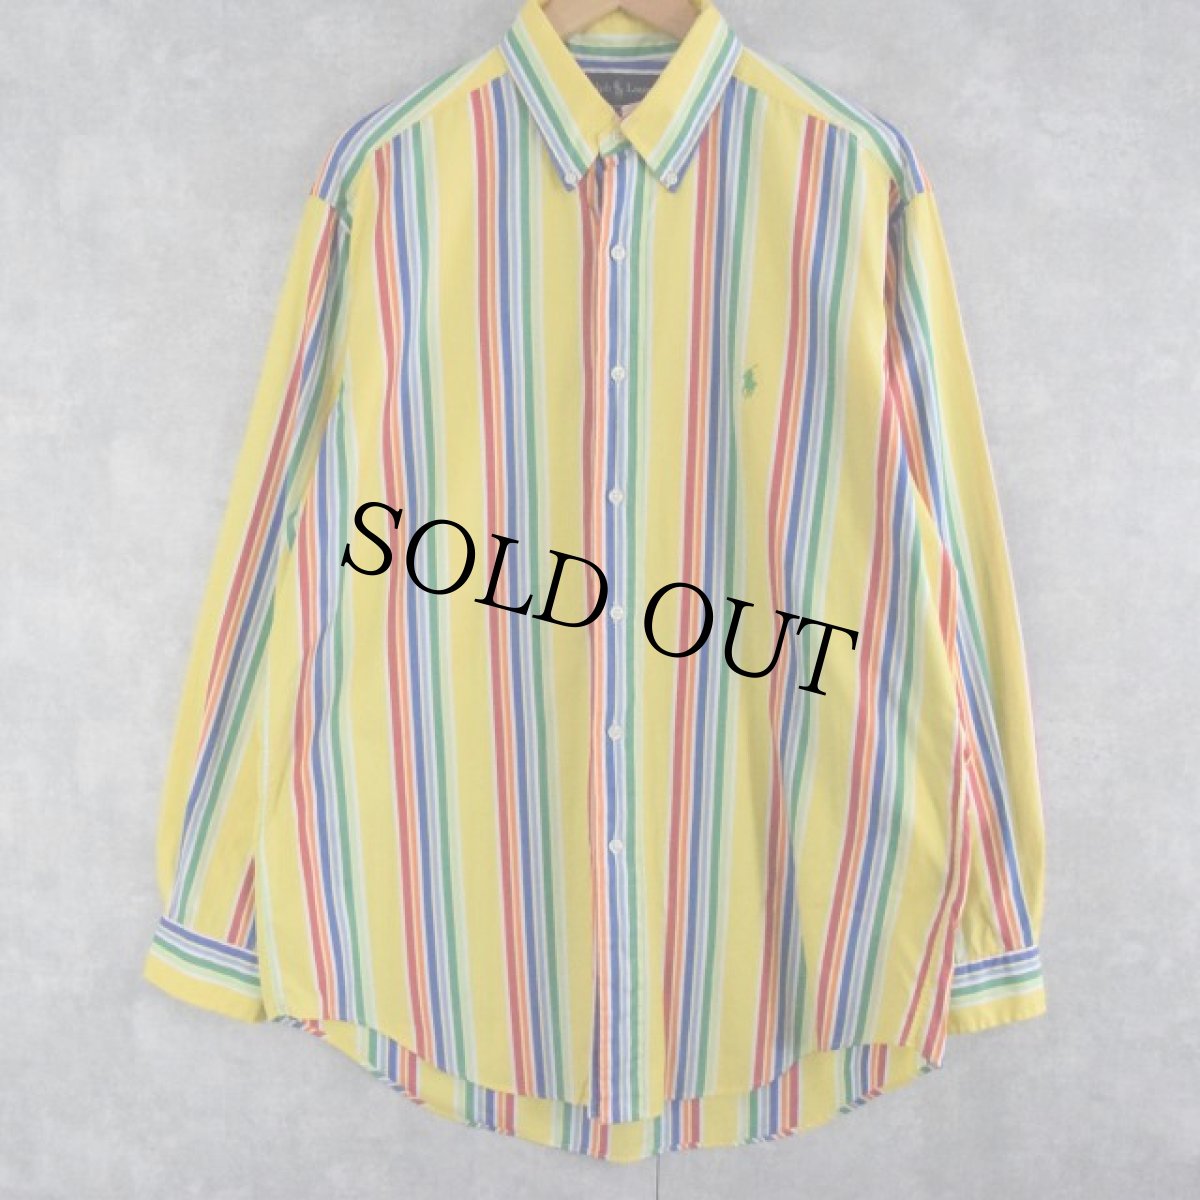 画像1: 【SALE】Ralph Lauren "CLASSIC FIT" マルチストライプ柄 ボタンダウンコットンシャツ L (1)